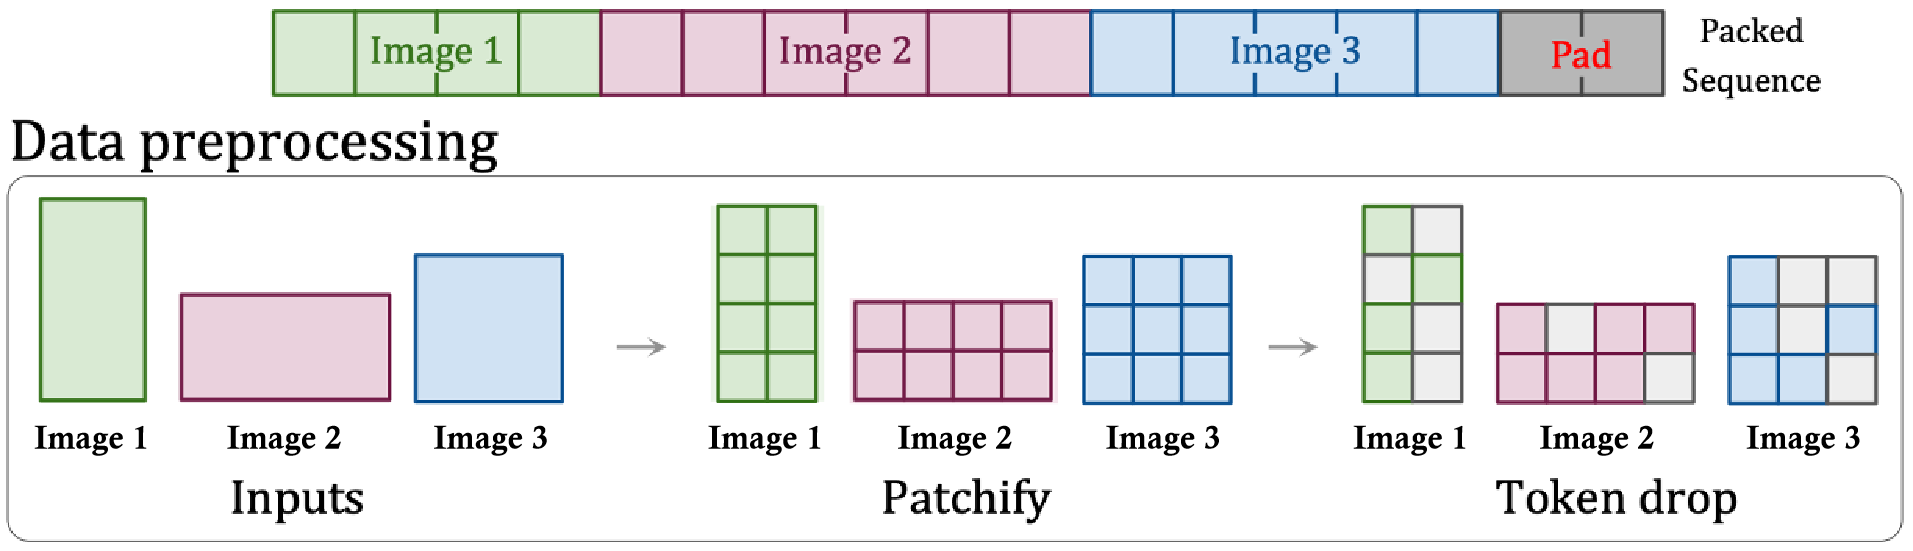 图 10:通过片段打包技术，可以使不同分辨率的图像或视频维持其原始的宽高比。此外，有时候删减信息片段（Token）也可以作为一种数据增强手段。